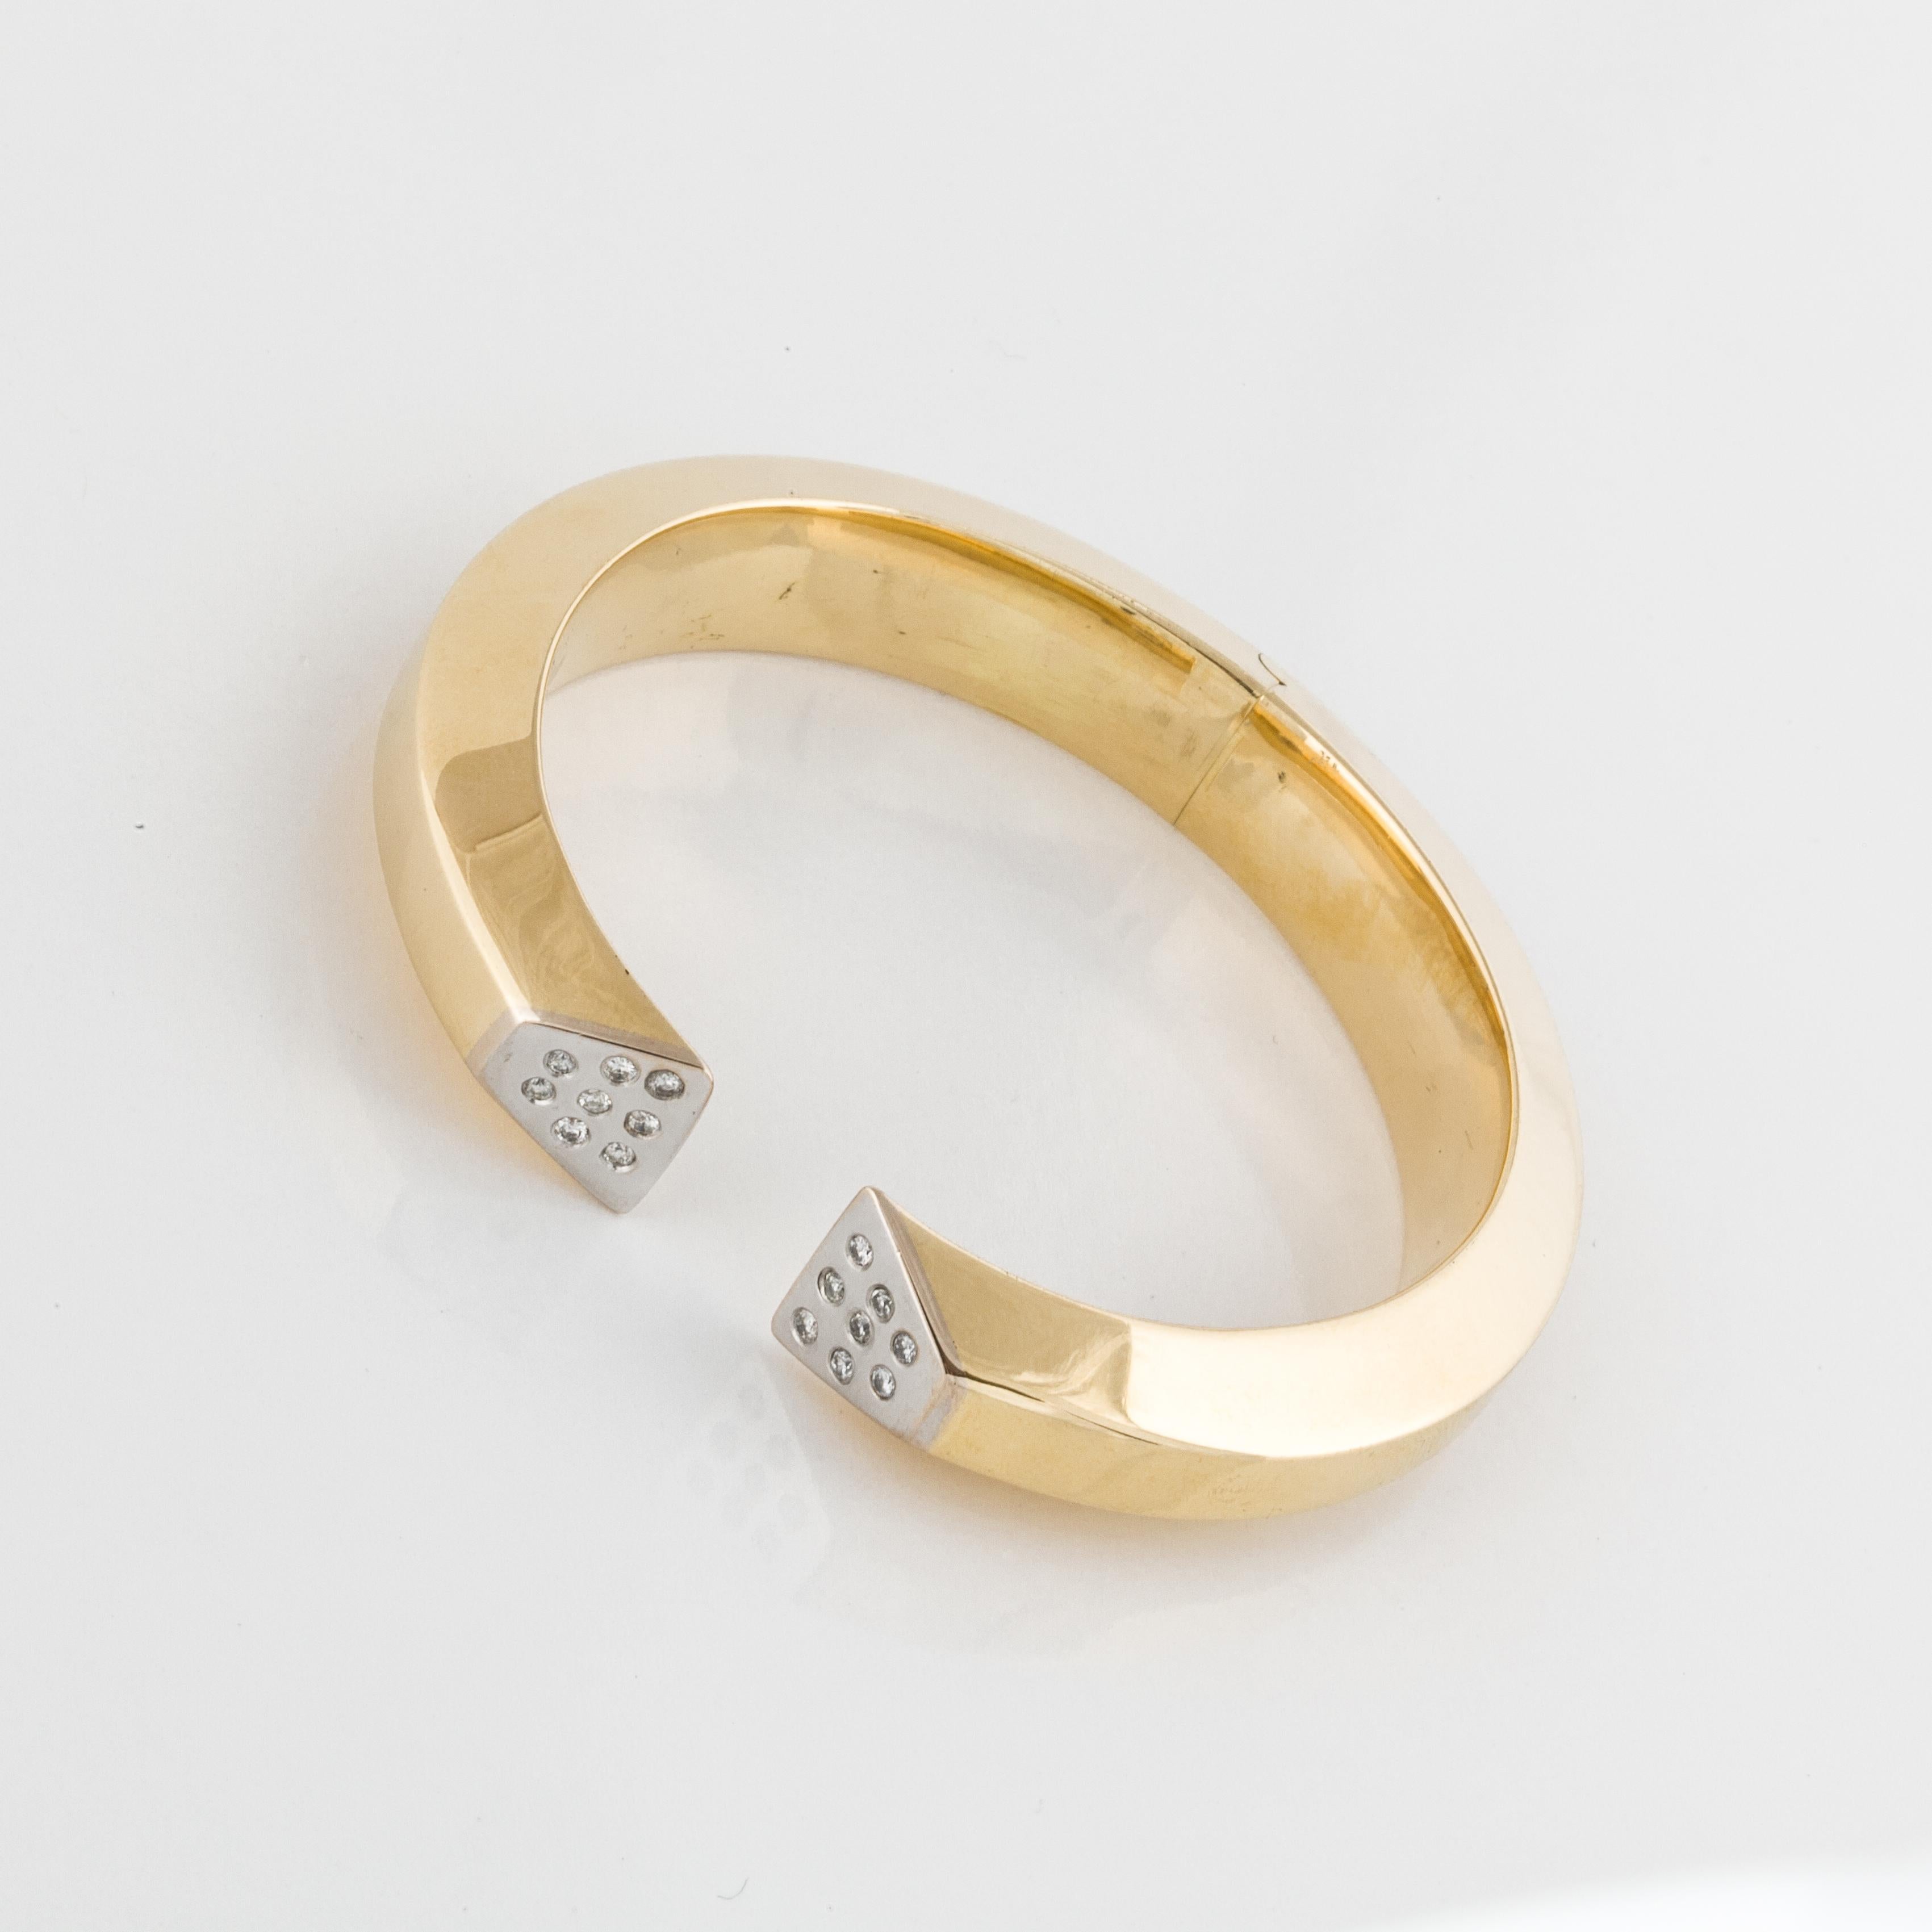 Modernes Scharnierarmband aus 18 Karat Gelbgold mit runden, in 18 Karat Weißgold gefassten Diamanten.  Es gibt sechzehn runde Diamanten von insgesamt 0,35 Karat, Farbe G-H und Reinheit SI1-I1.  Die Oberseite ist 7/16 Zoll breit und der